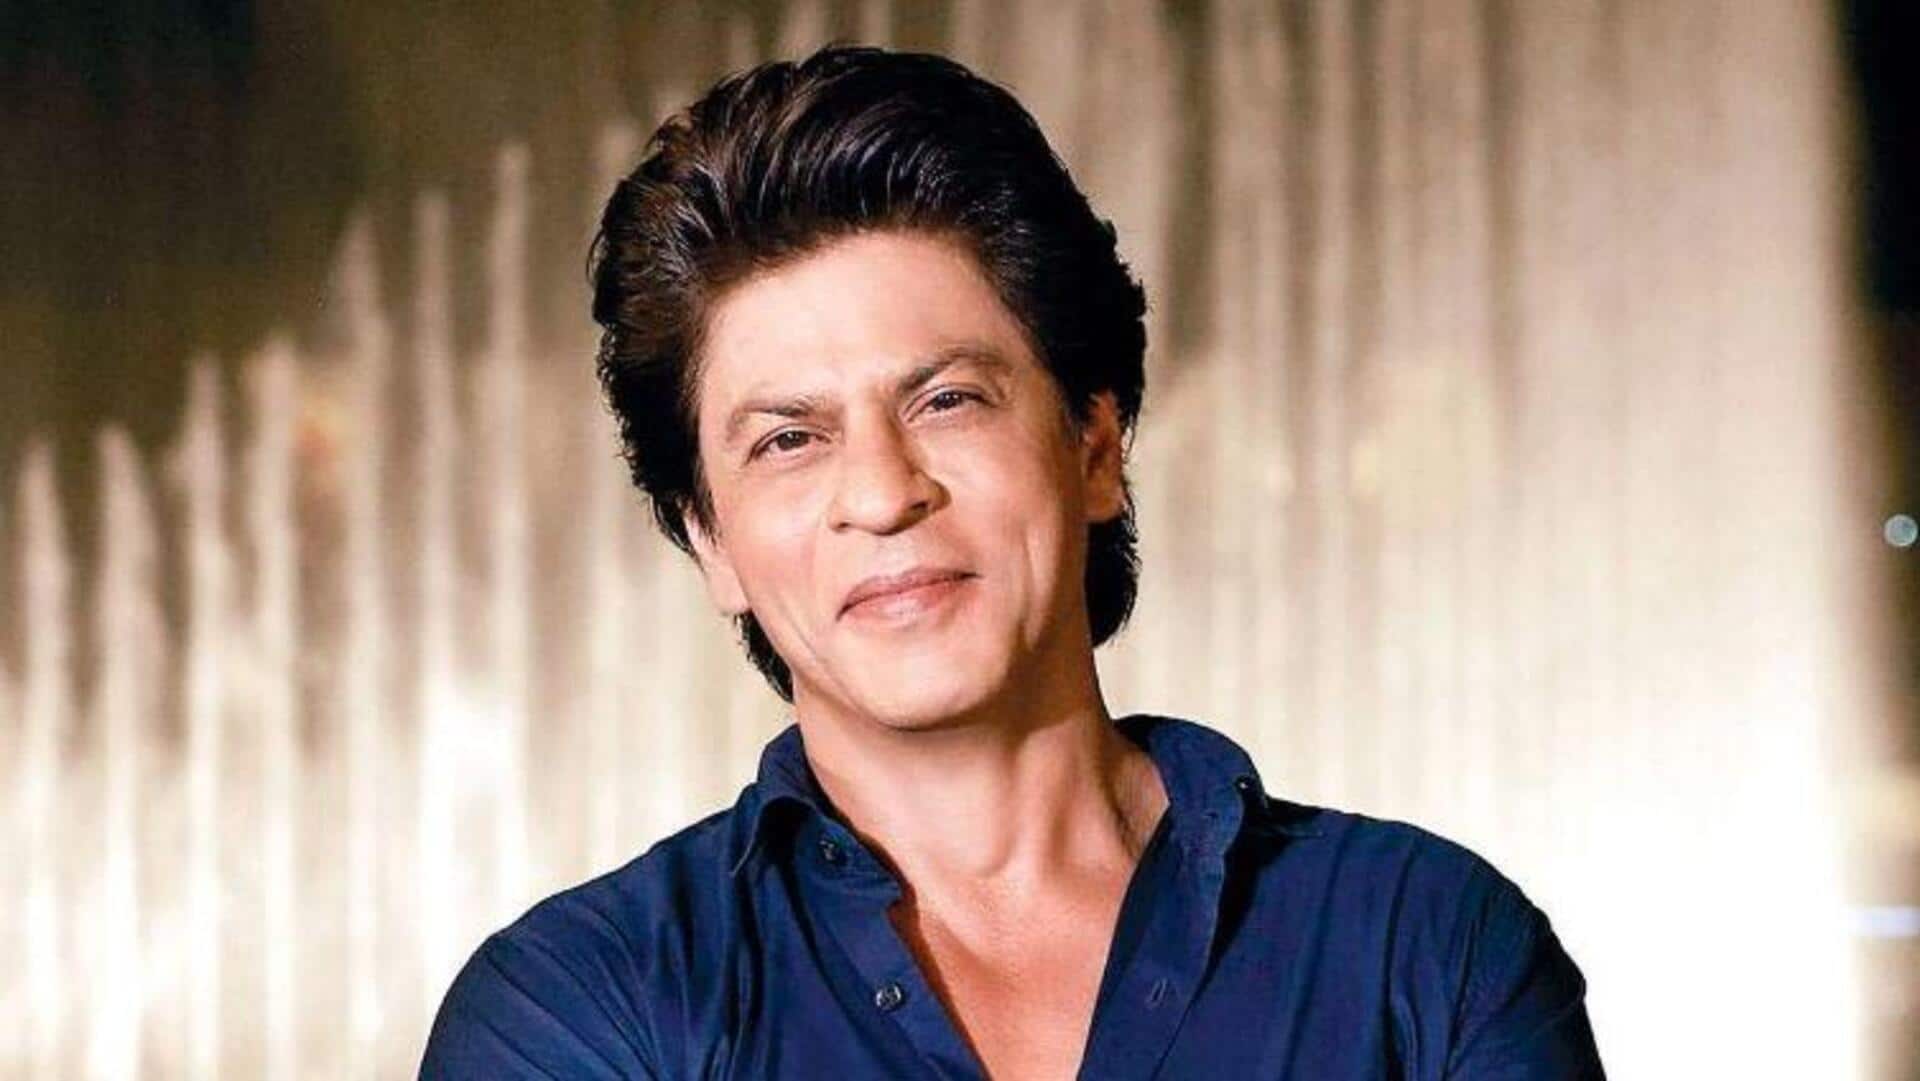 यश की फिल्म 'टॉक्सिक' में मेहमान भूमिका निभा सकते हैं शाहरुख खान, बातचीत शुरू 